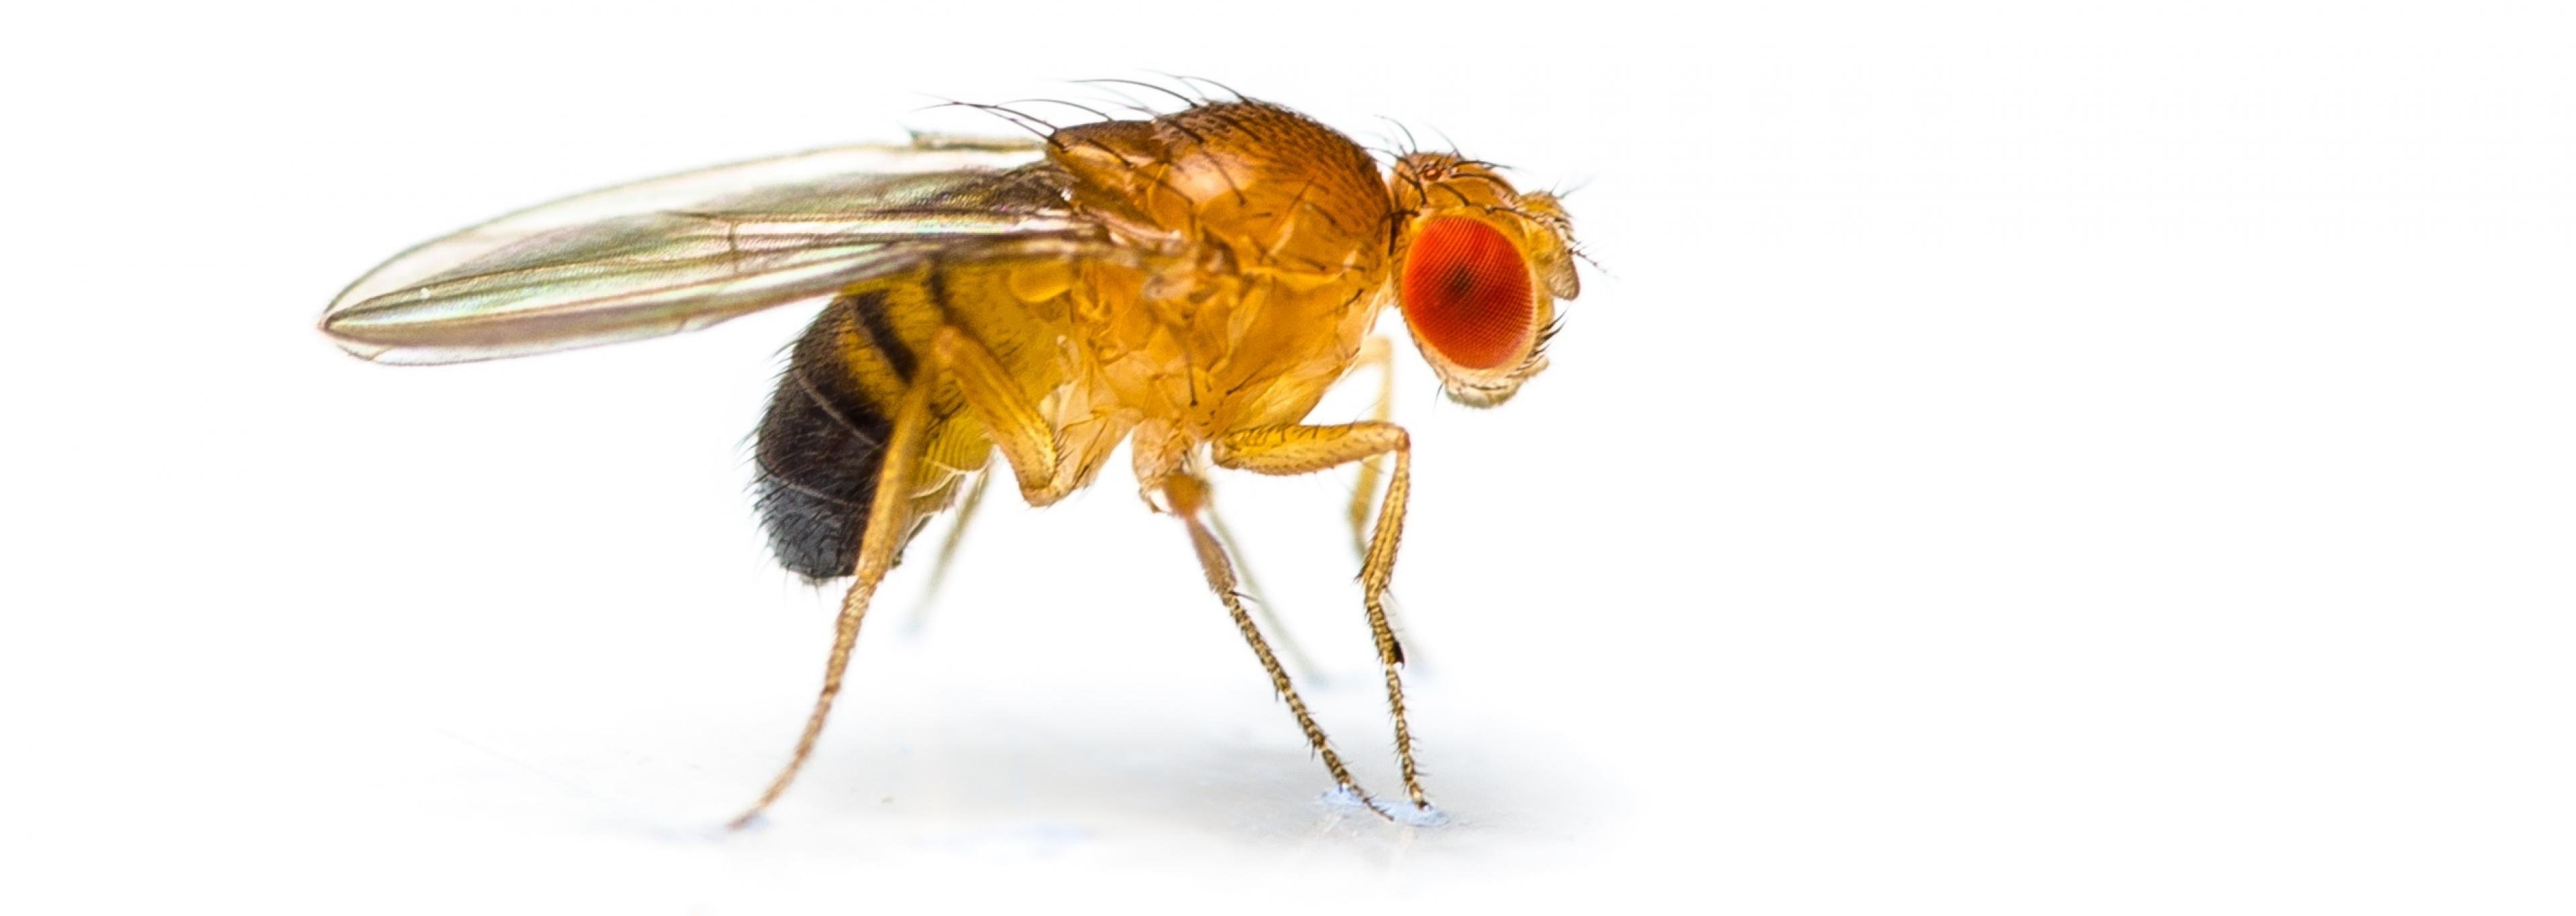 Eine rotäugige Fruchtfliege Drosophila melanogaster vor weißem Hintergrund